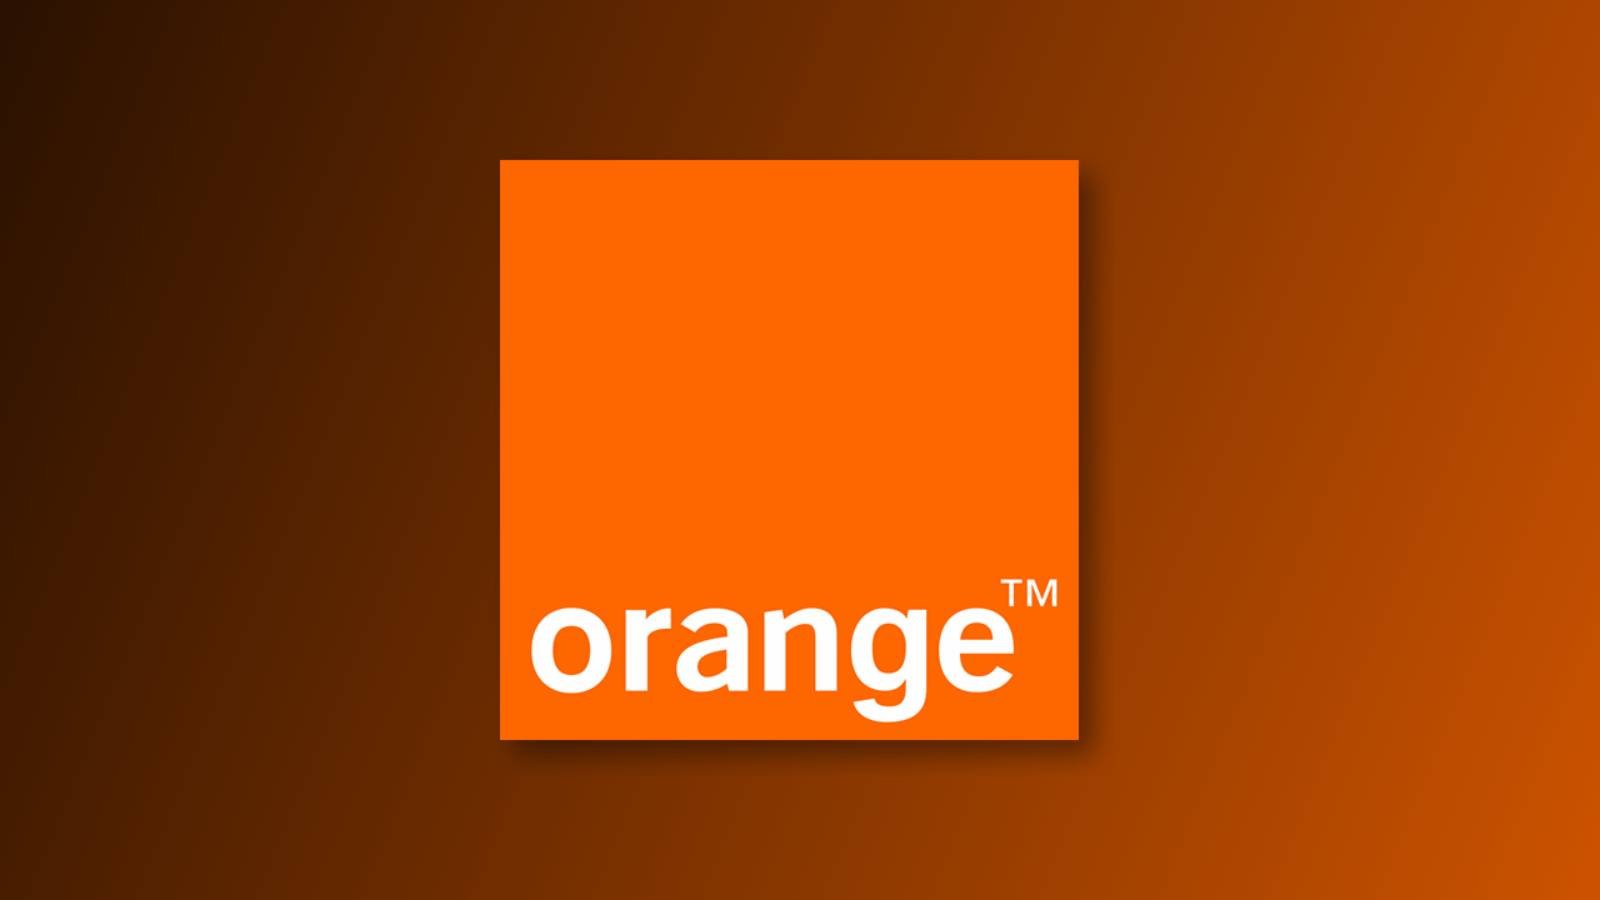 Orange fun